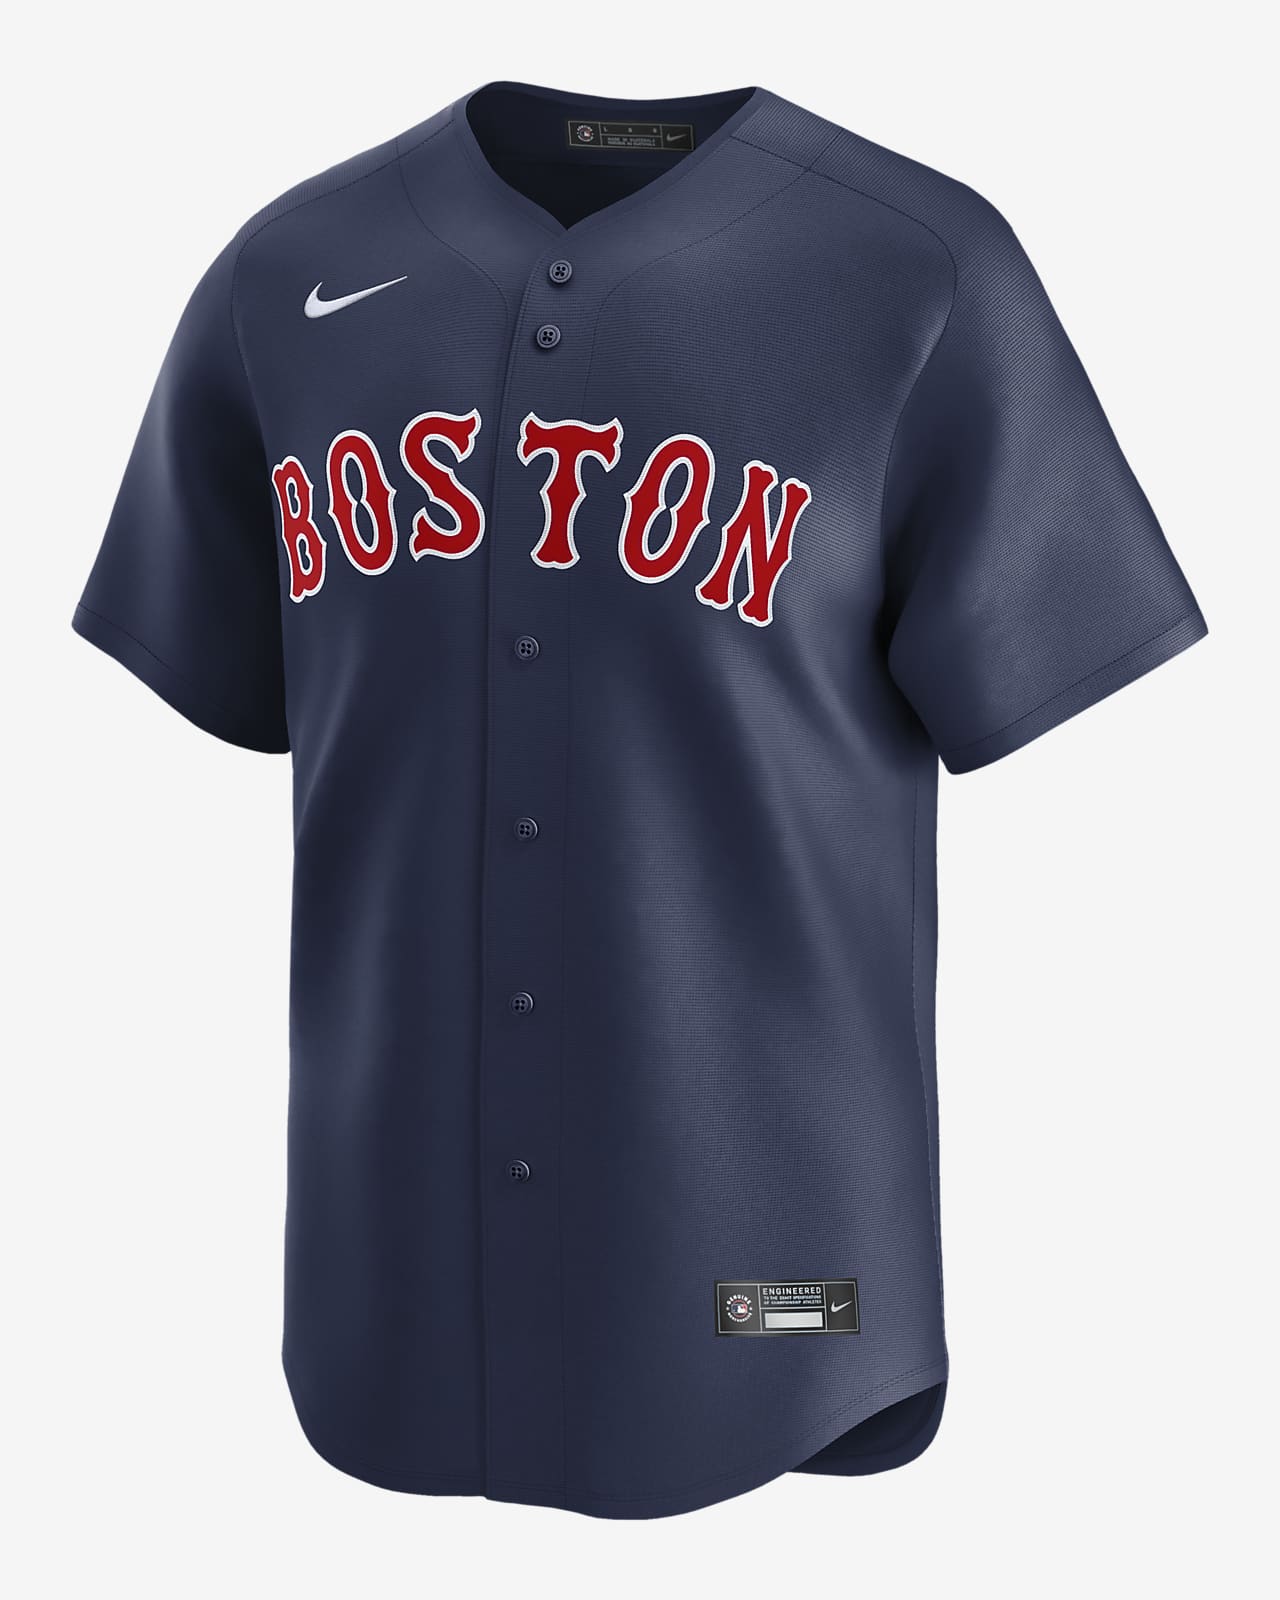 Rafael Devers Boston Red Sox Men's Nike Dri-FIT ADV MLB Limited Jersey